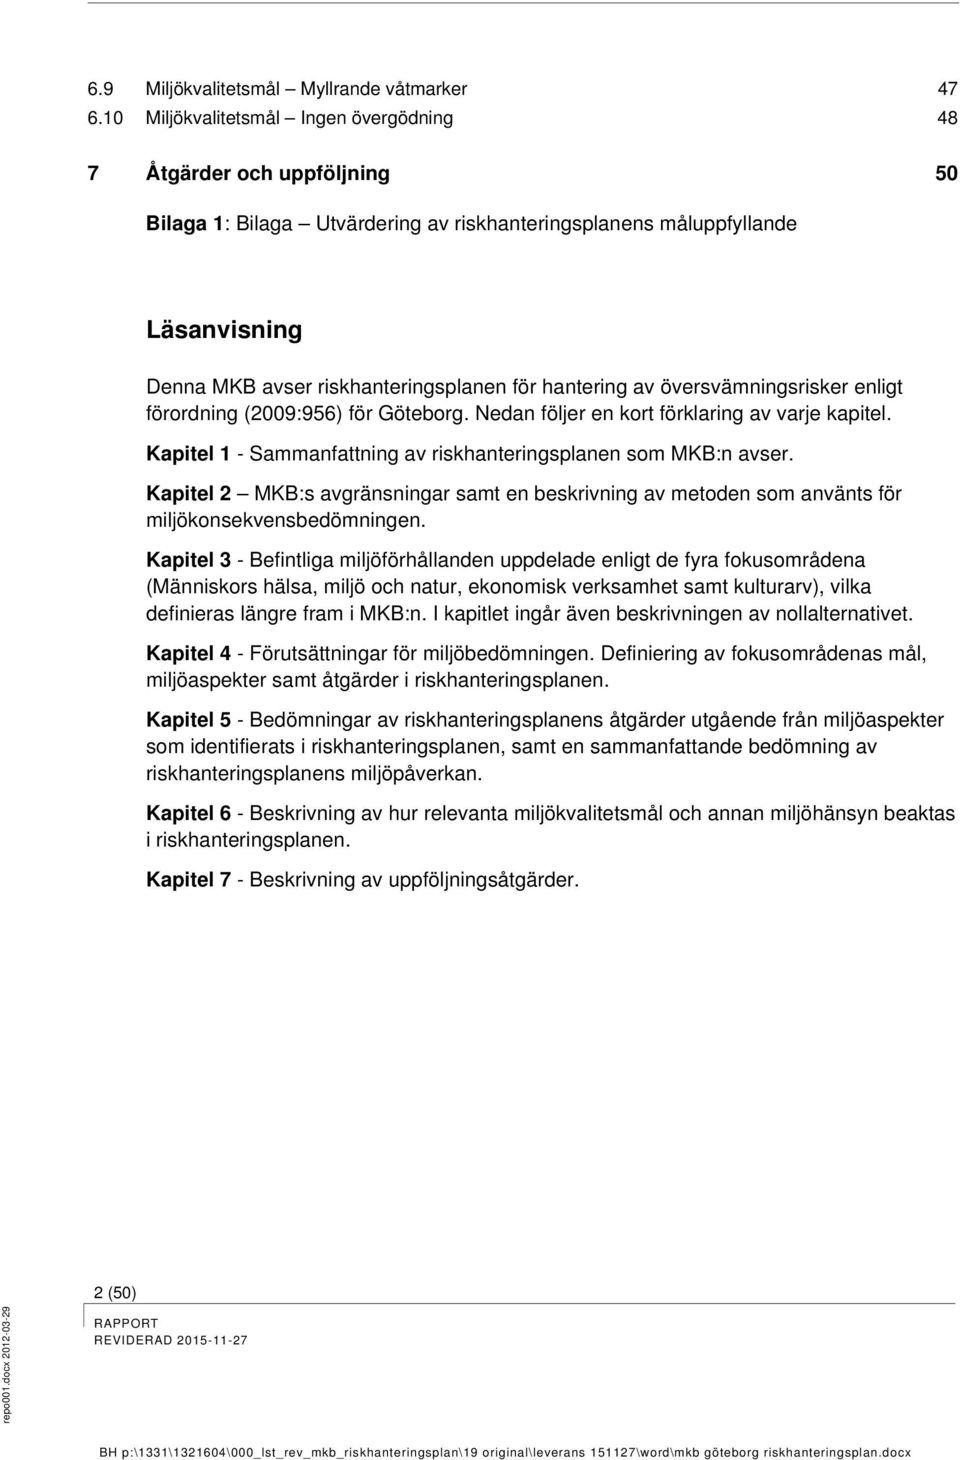 hantering av översvämningsrisker enligt förordning (2009:956) för Göteborg. Nedan följer en kort förklaring av varje kapitel. Kapitel 1 - Sammanfattning av riskhanteringsplanen som MKB:n avser.